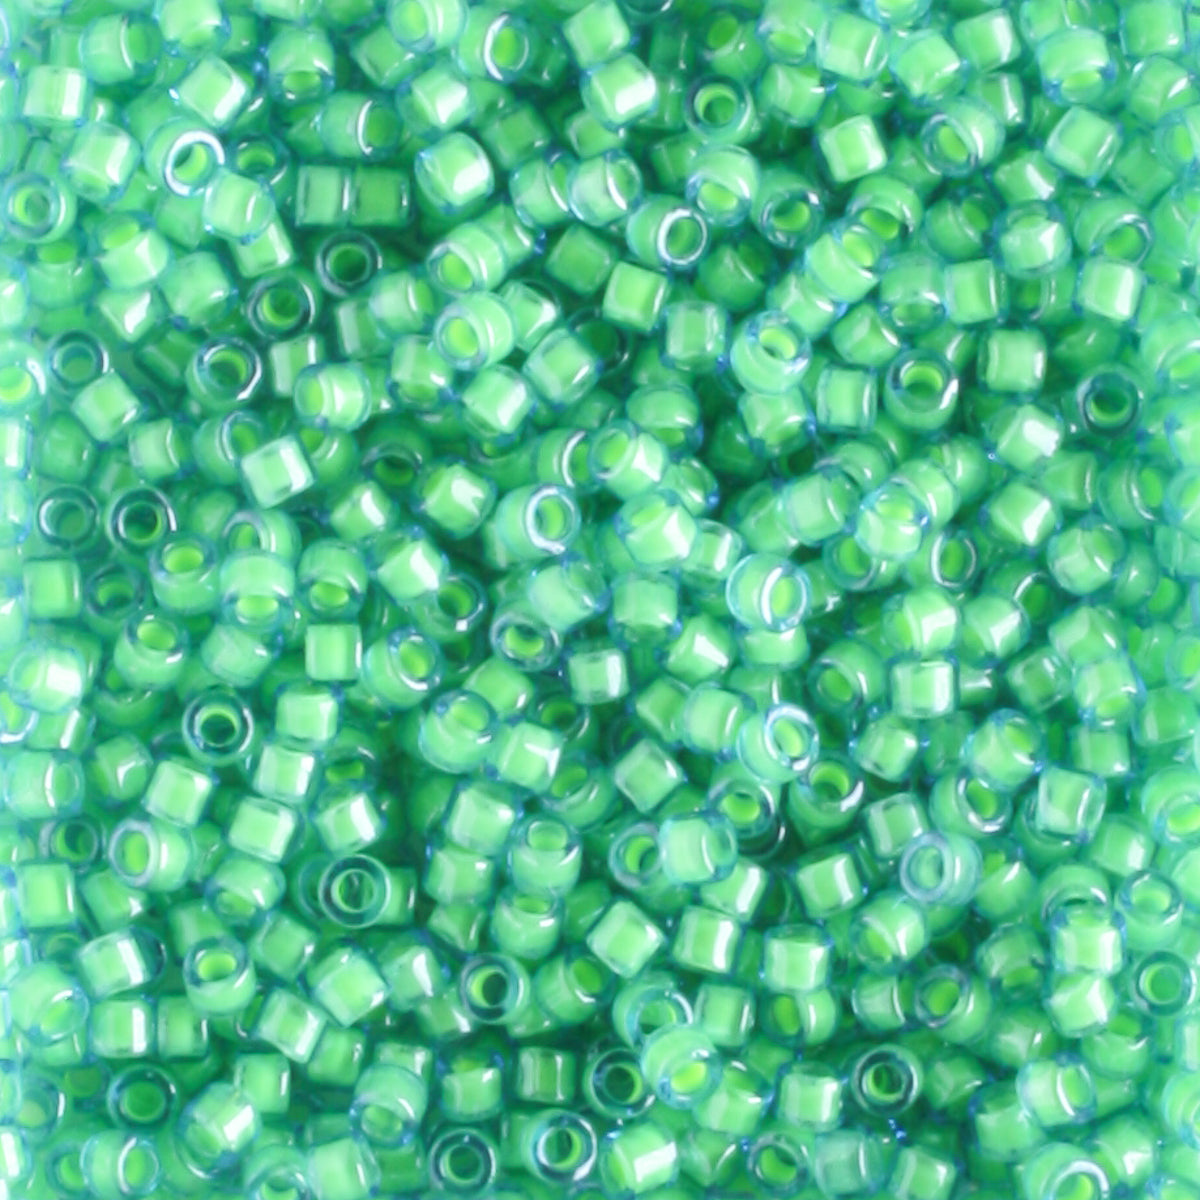 DB2053 Luminous Mermaid Green - 5 grams